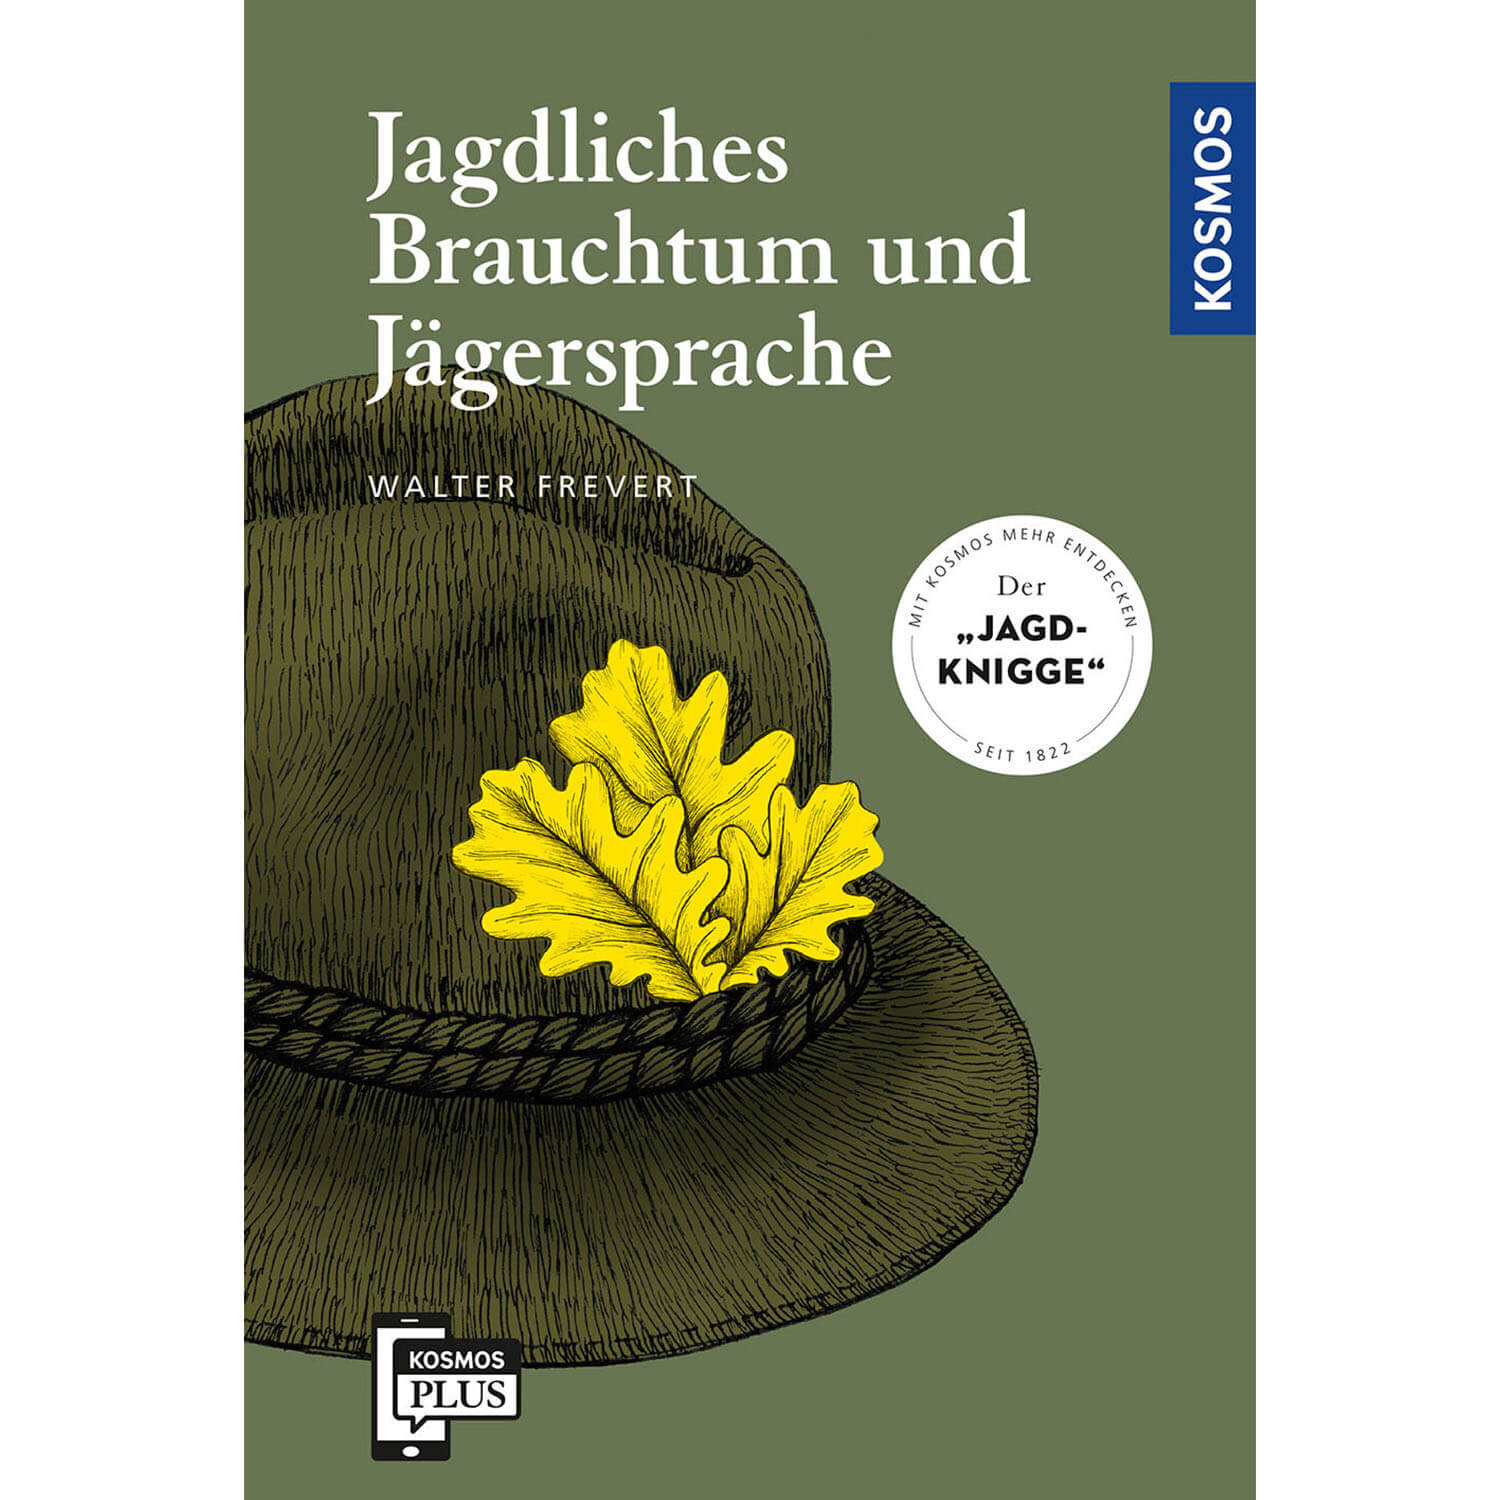 Jagdliches Brauchtum und Jägersprache - Buch- Walter Frevert - Jagdbücher